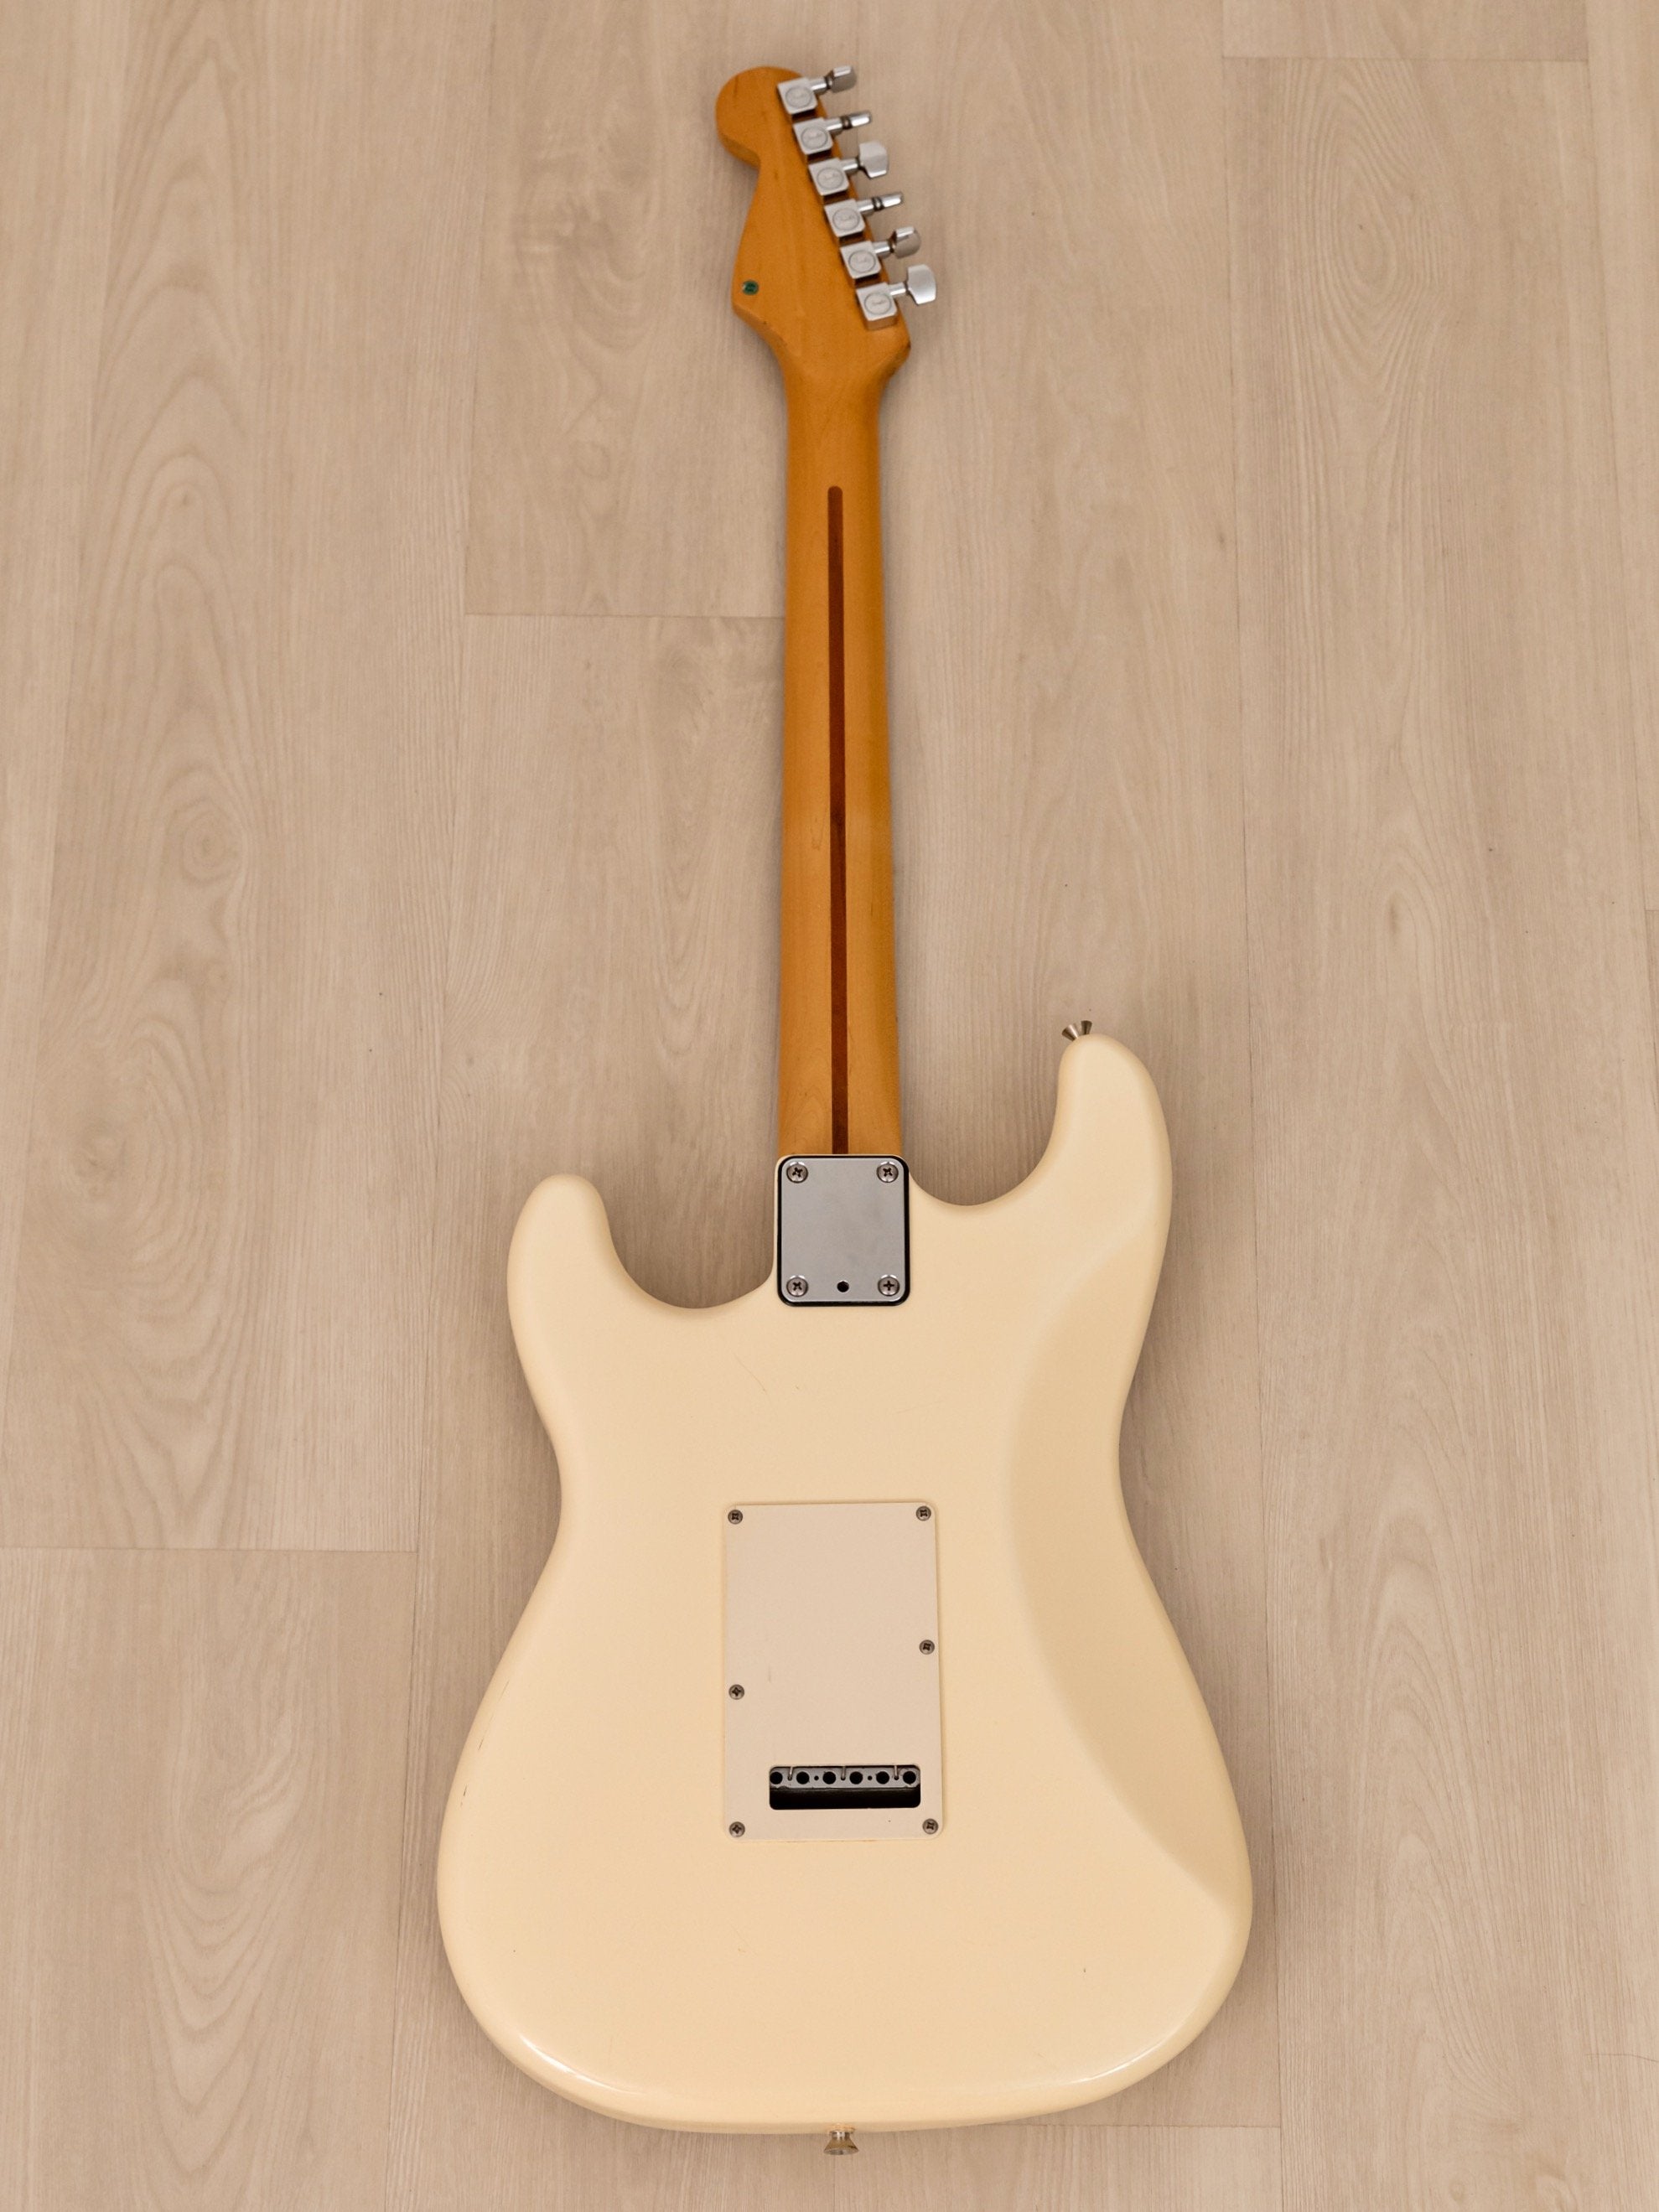 1989 Fender Japan Stratocaster ST650SPL w/ American Standard Tonewoods & Hardware, MIJ Fujigen